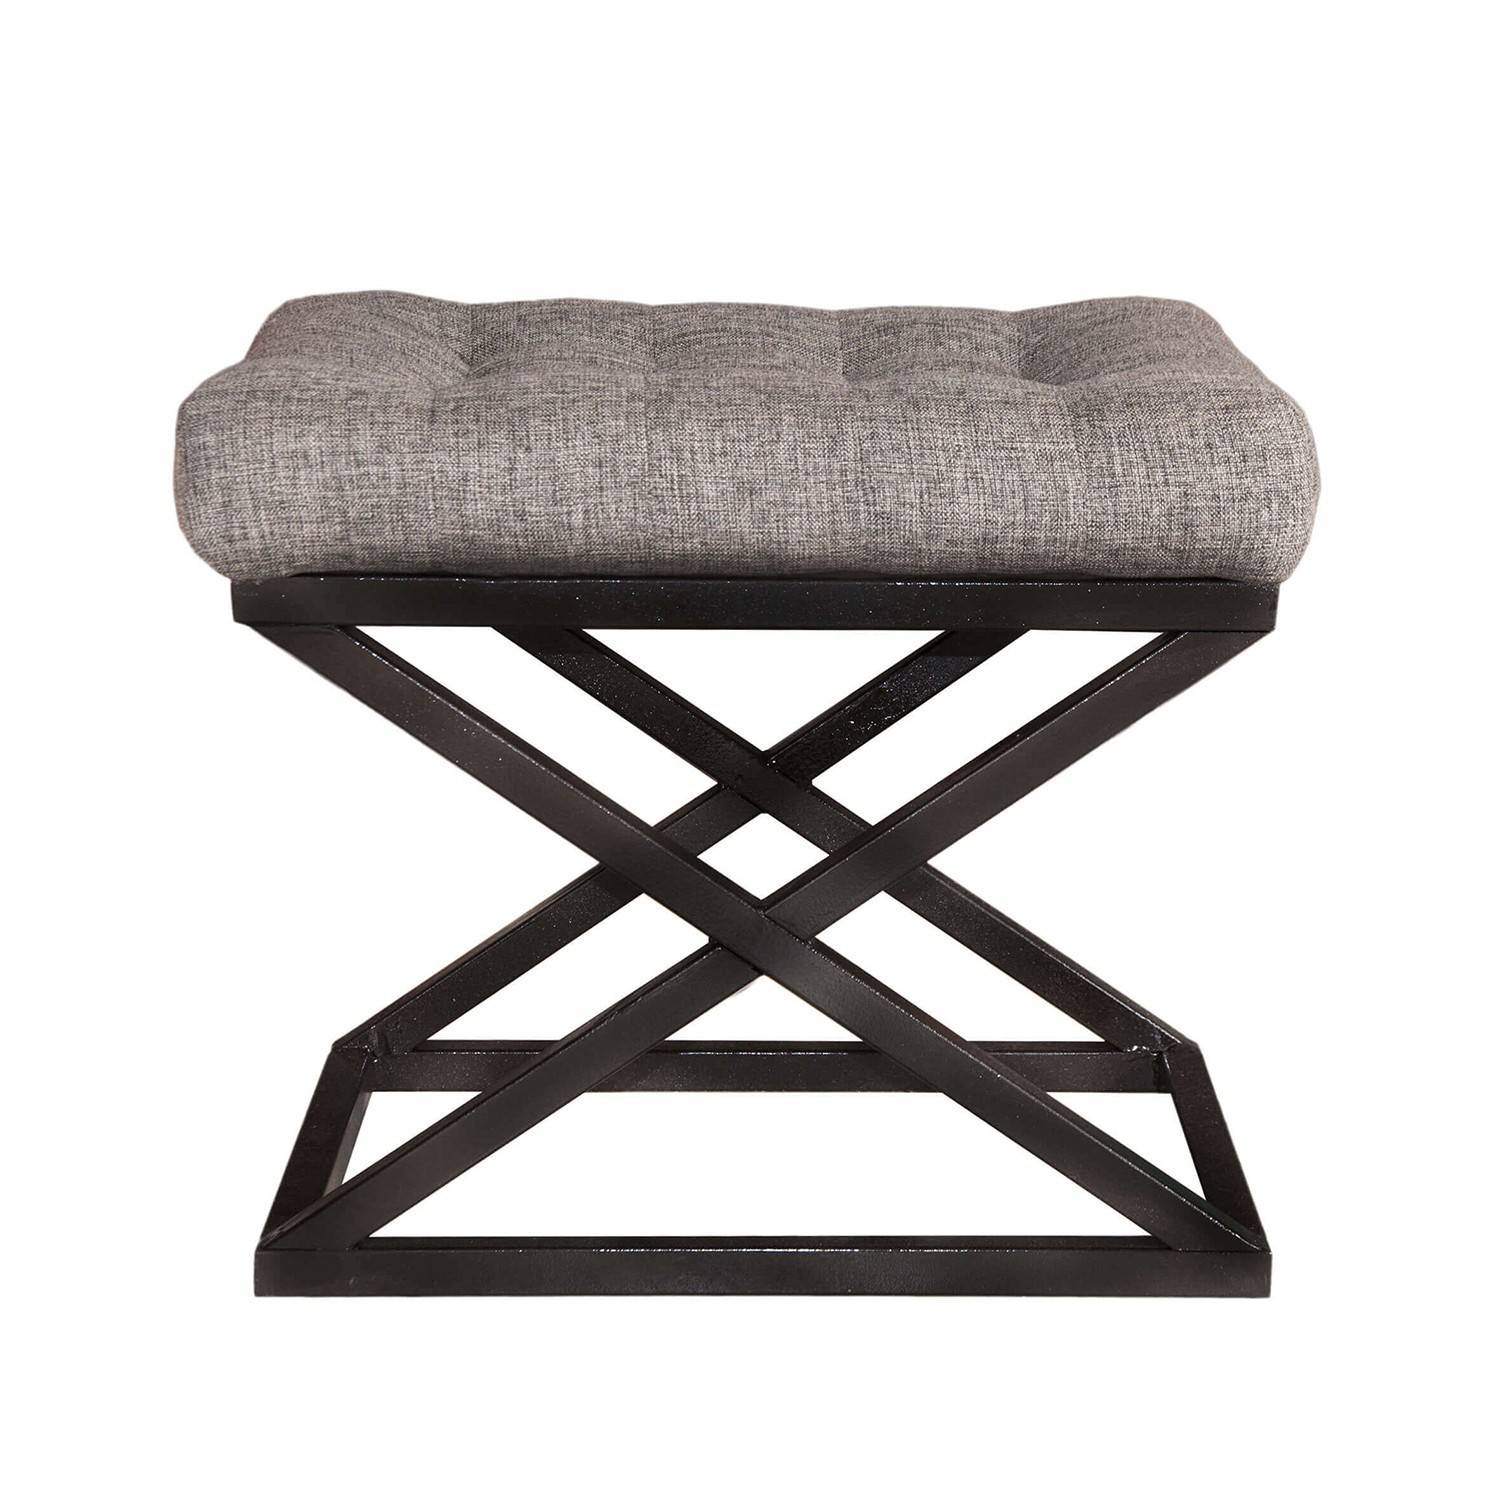 Taburete Ulad de metal negro y terciopelo gris claro, asiento tapizado